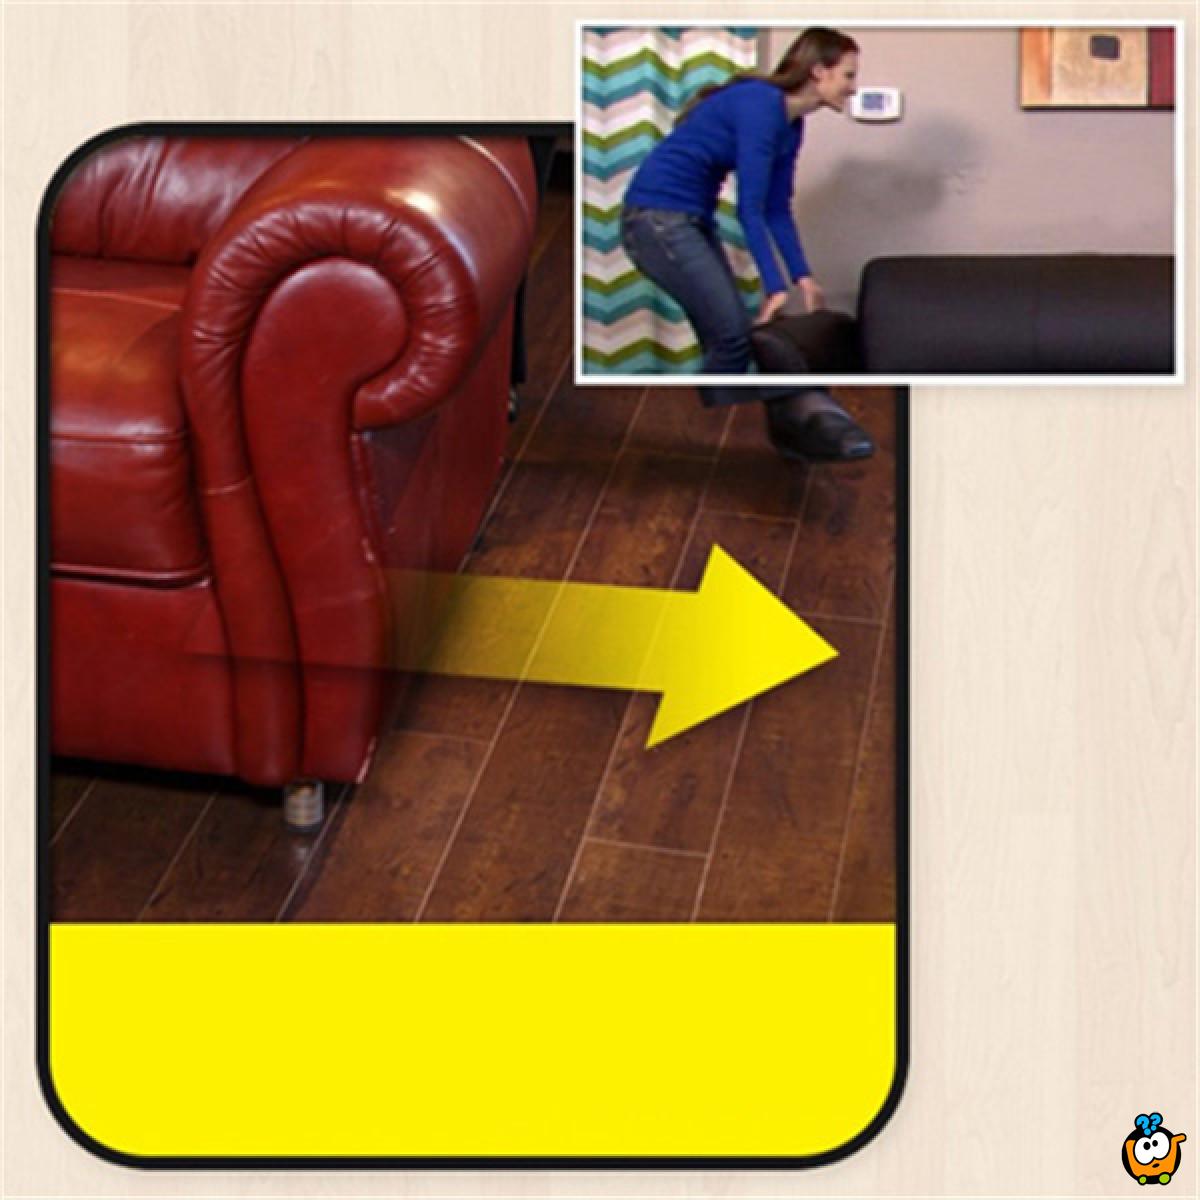 Furniture Feet - Prilagodljivi nastavak za nogare za zaštitu podova